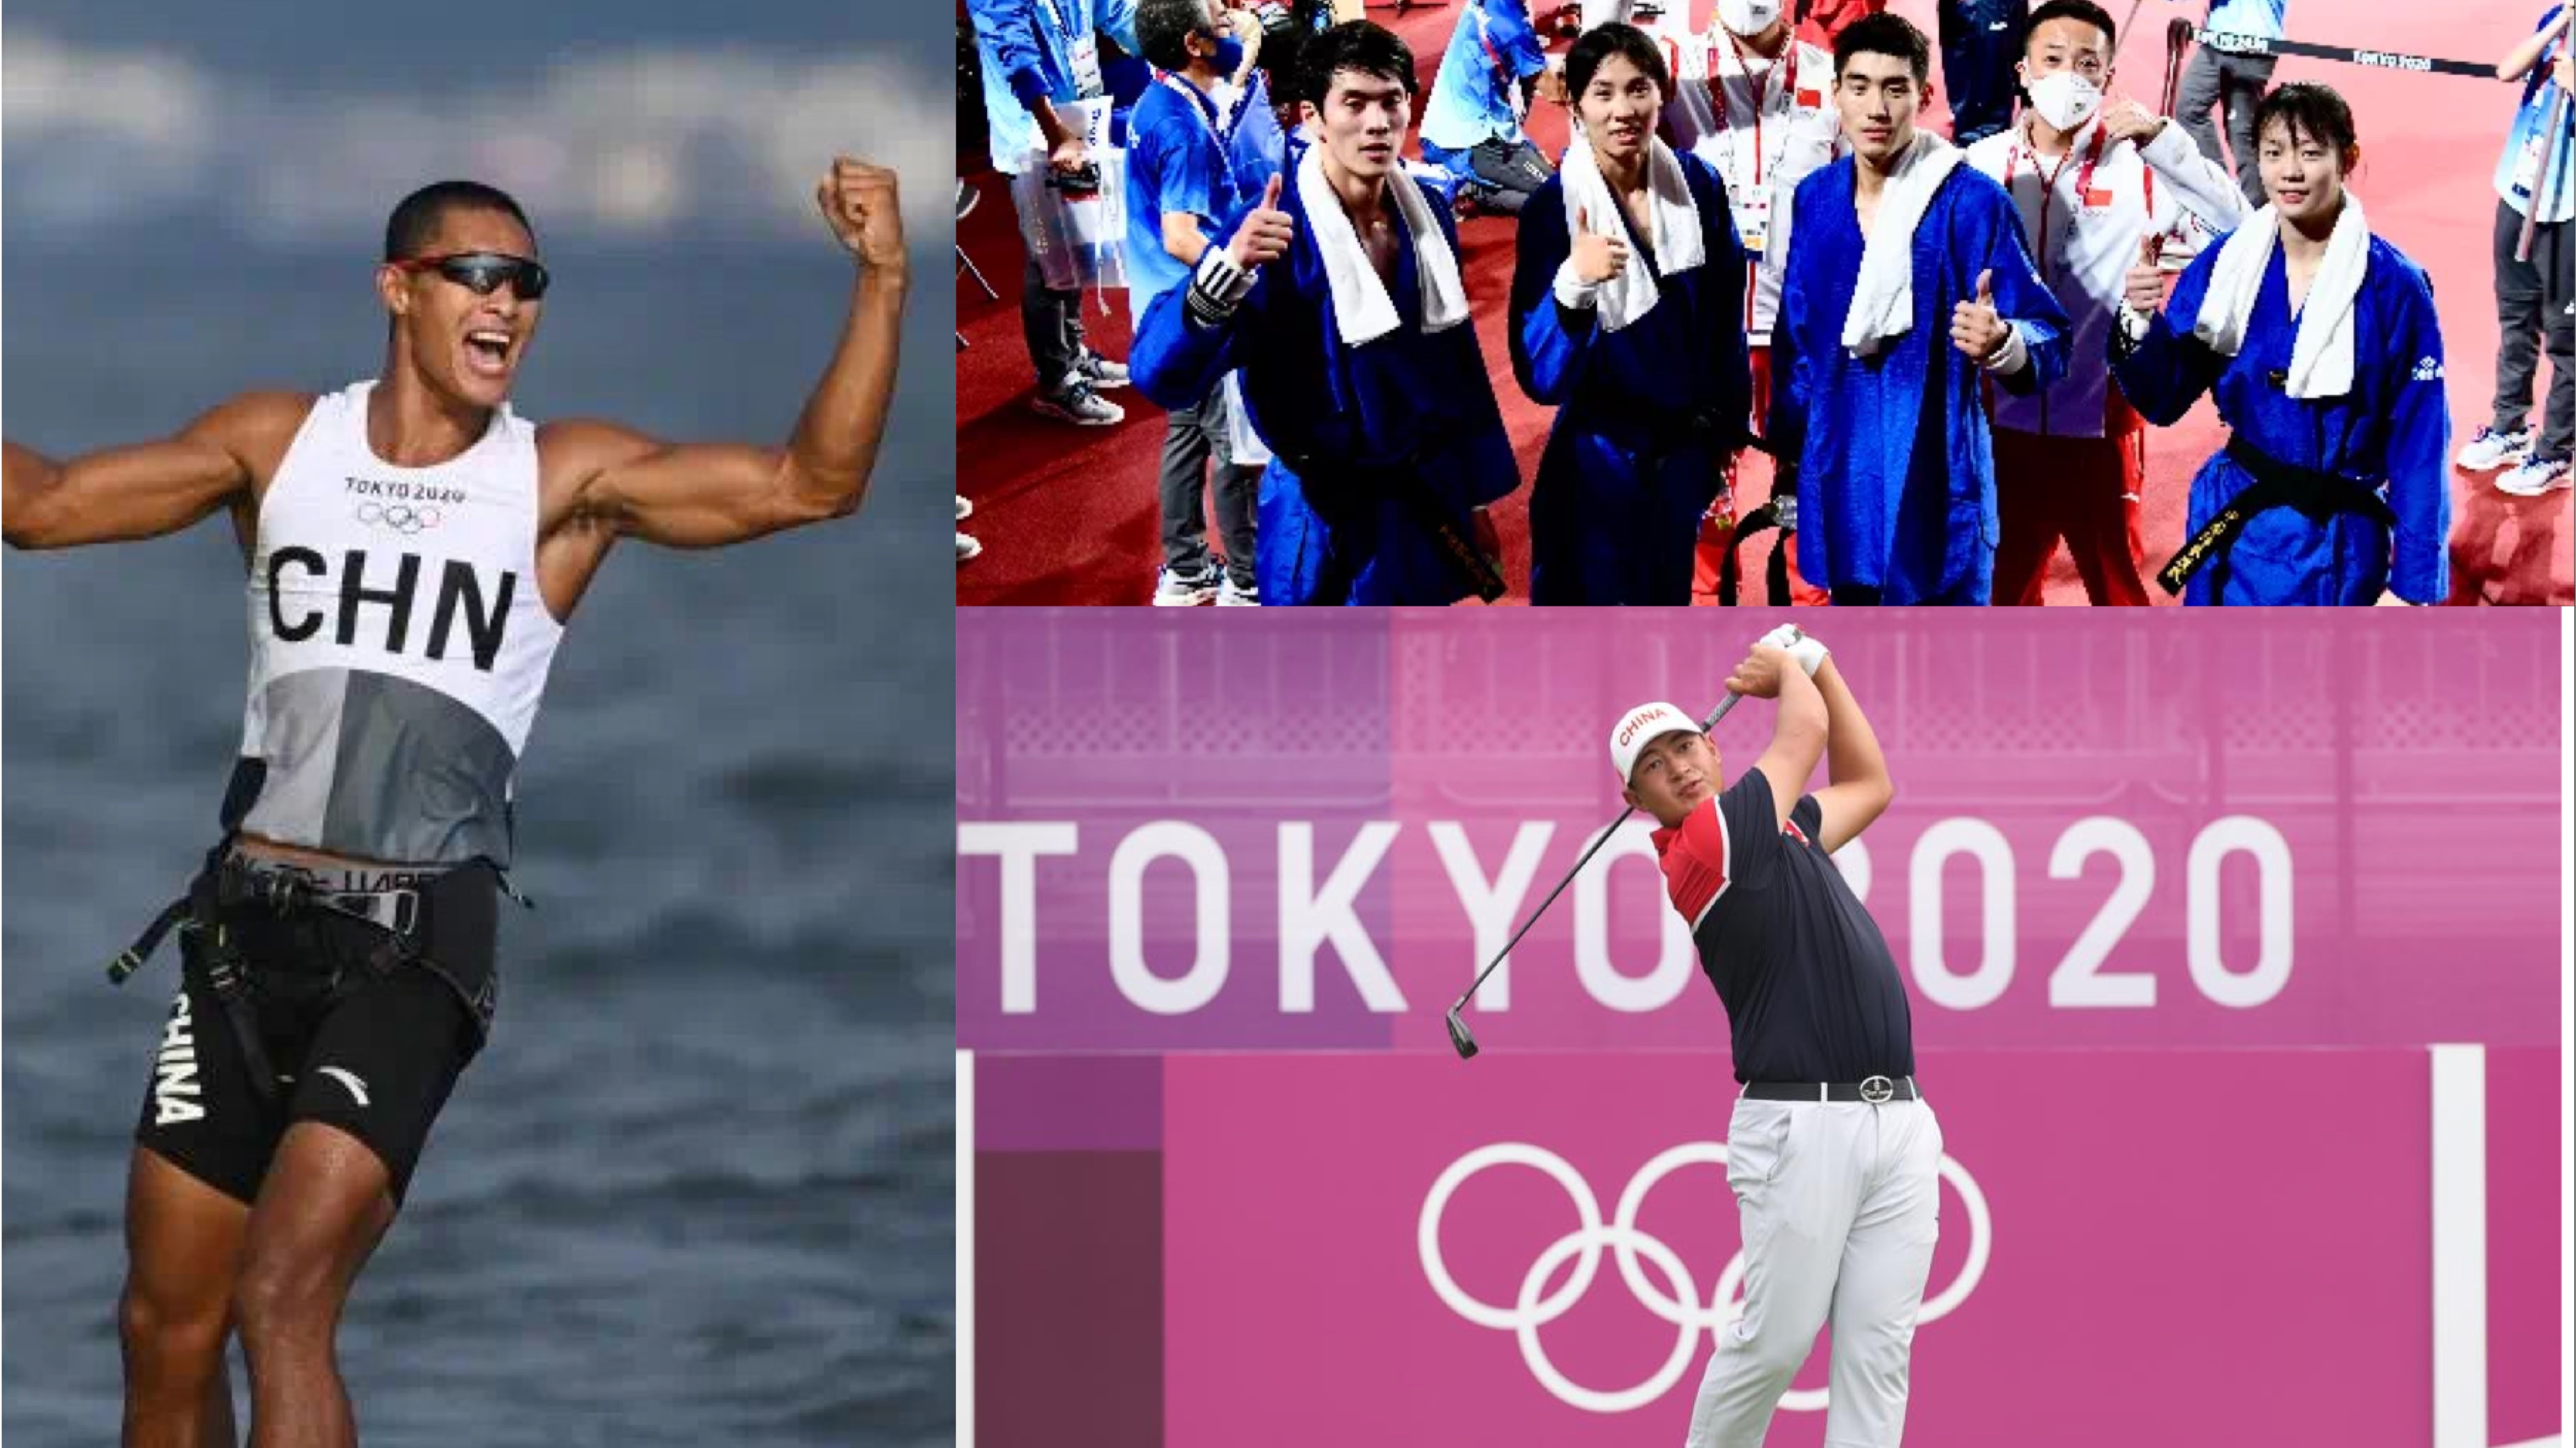 十四运会下月陕西举行 海南3名奥运选手将出战